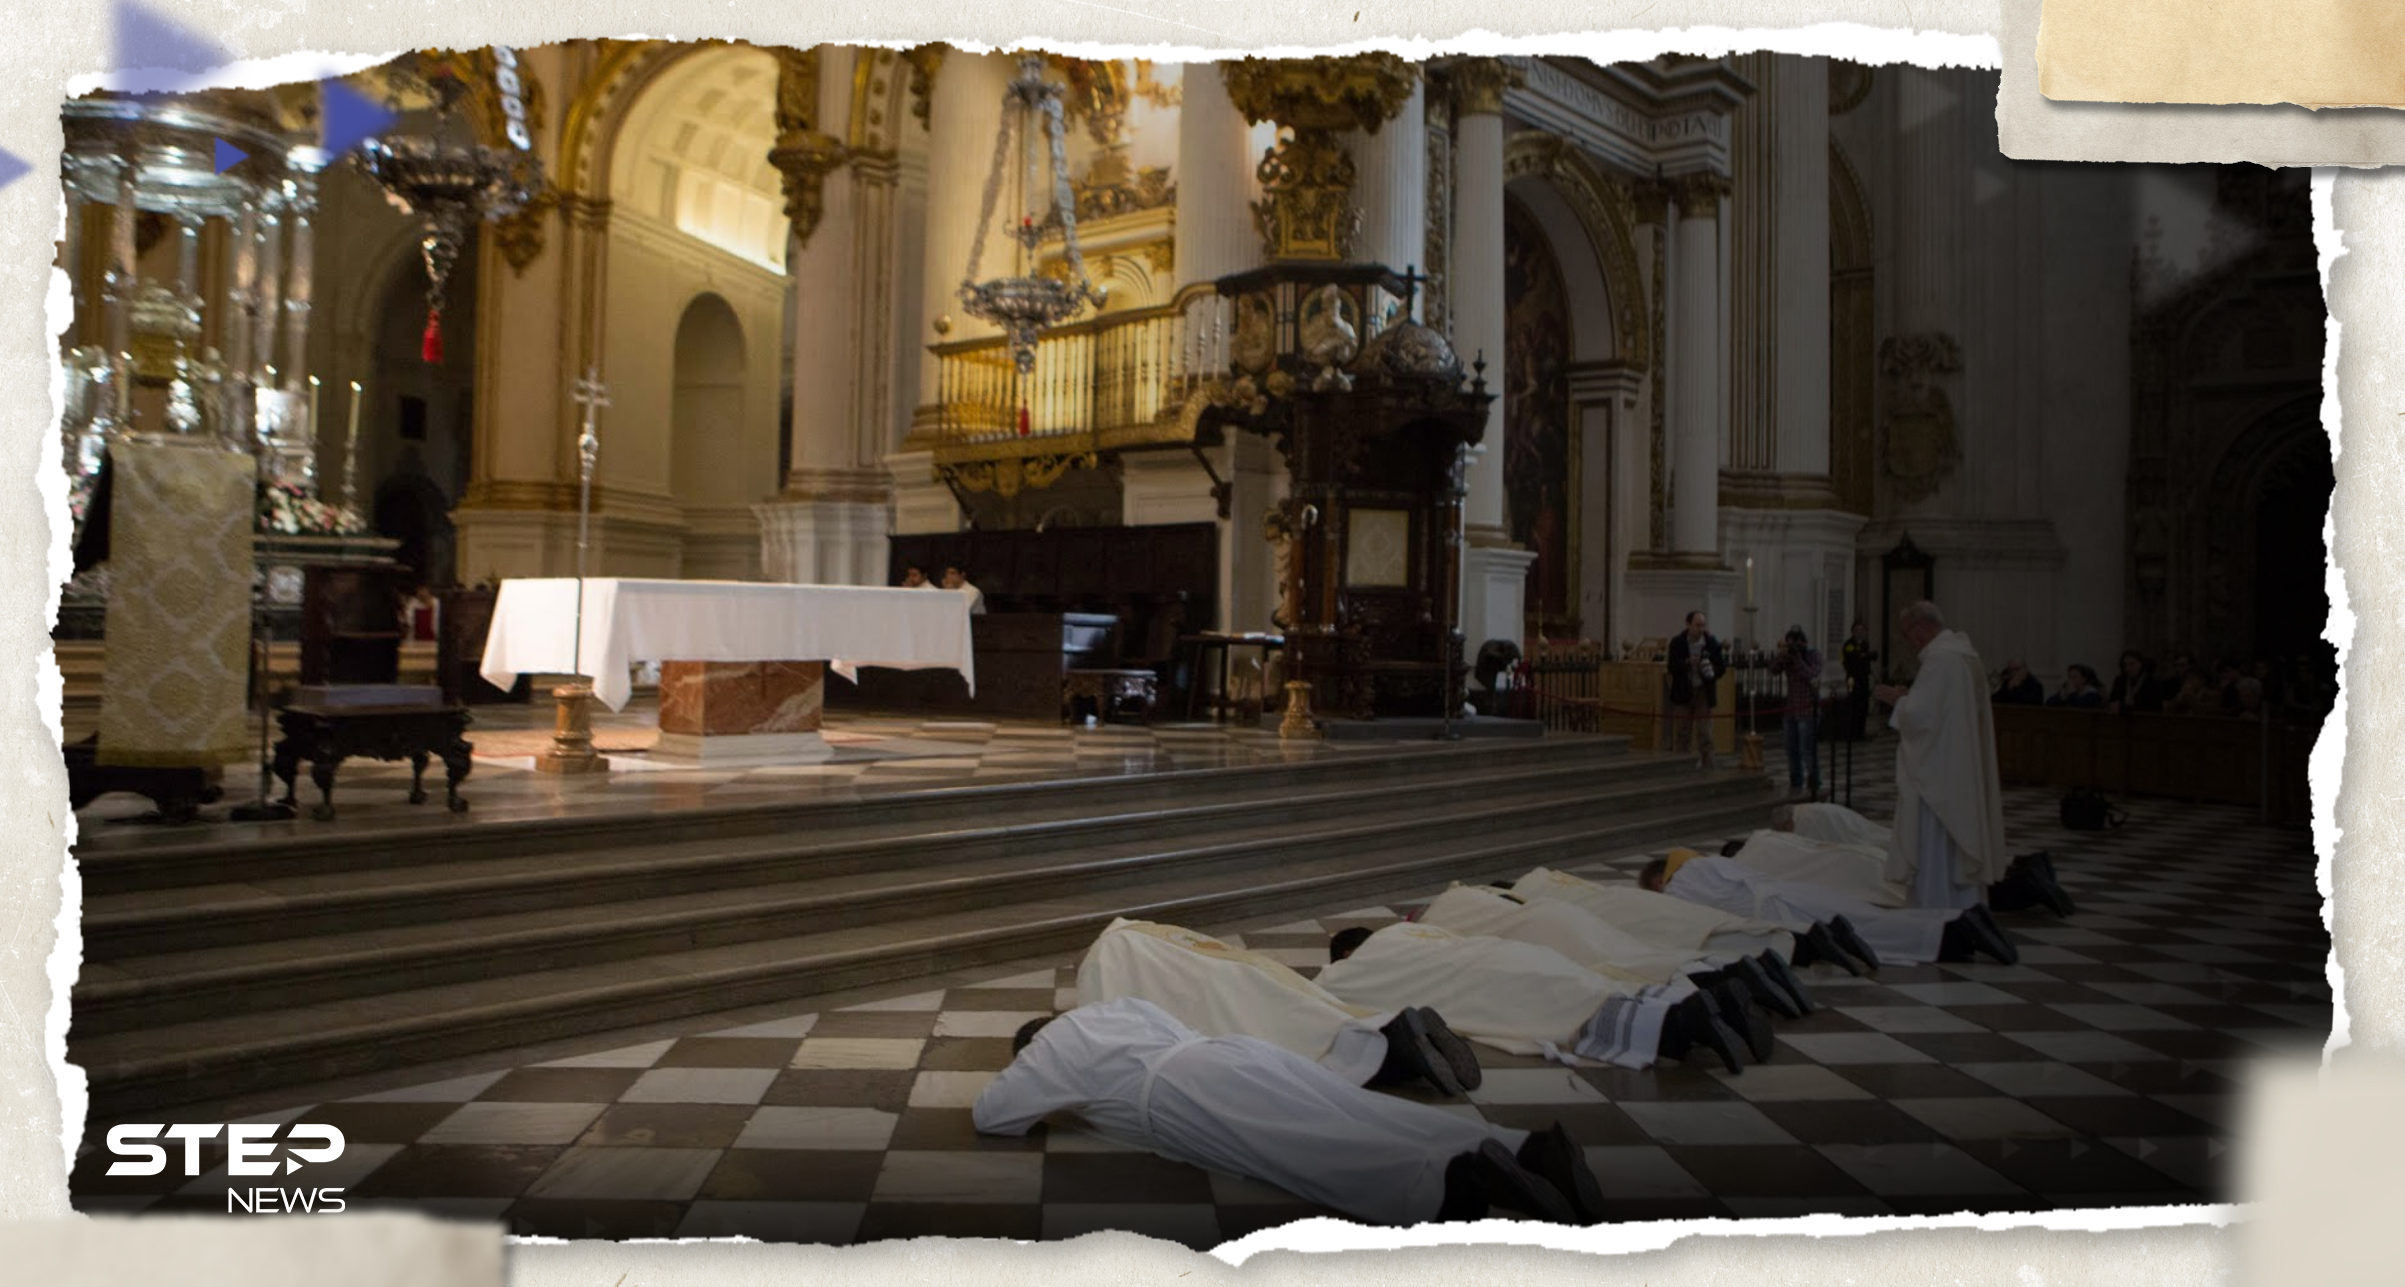 تحقيق يكشف عن "فضيحة من العيار الثقيل" تعصف بكنائس إسبانية